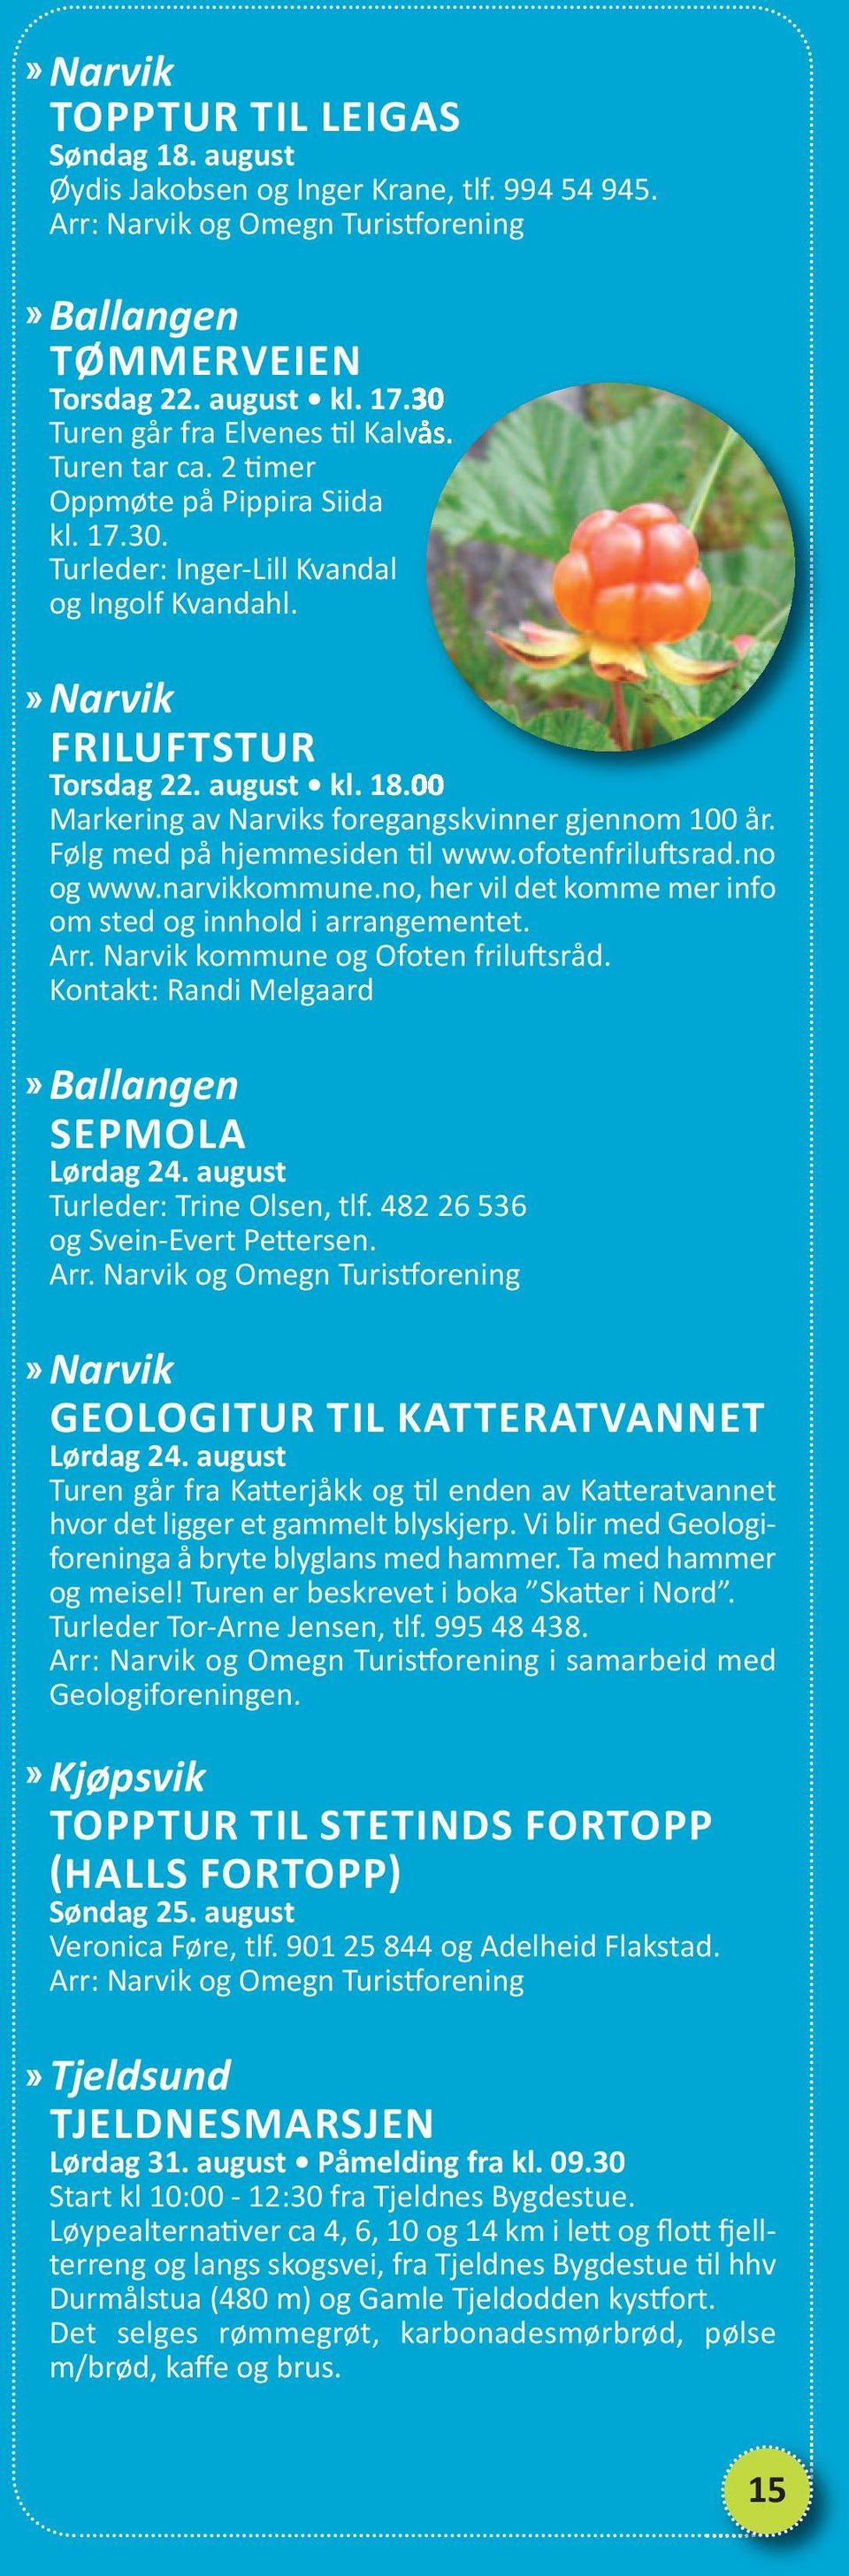 00 Markering av Narviks foregangskvinner gjennom 100 år. Følg med på hjemmesiden til www.ofotenfriluftsrad.no og www.narvikkommune.no, her vil det komme mer info om sted og innhold i arrangementet.